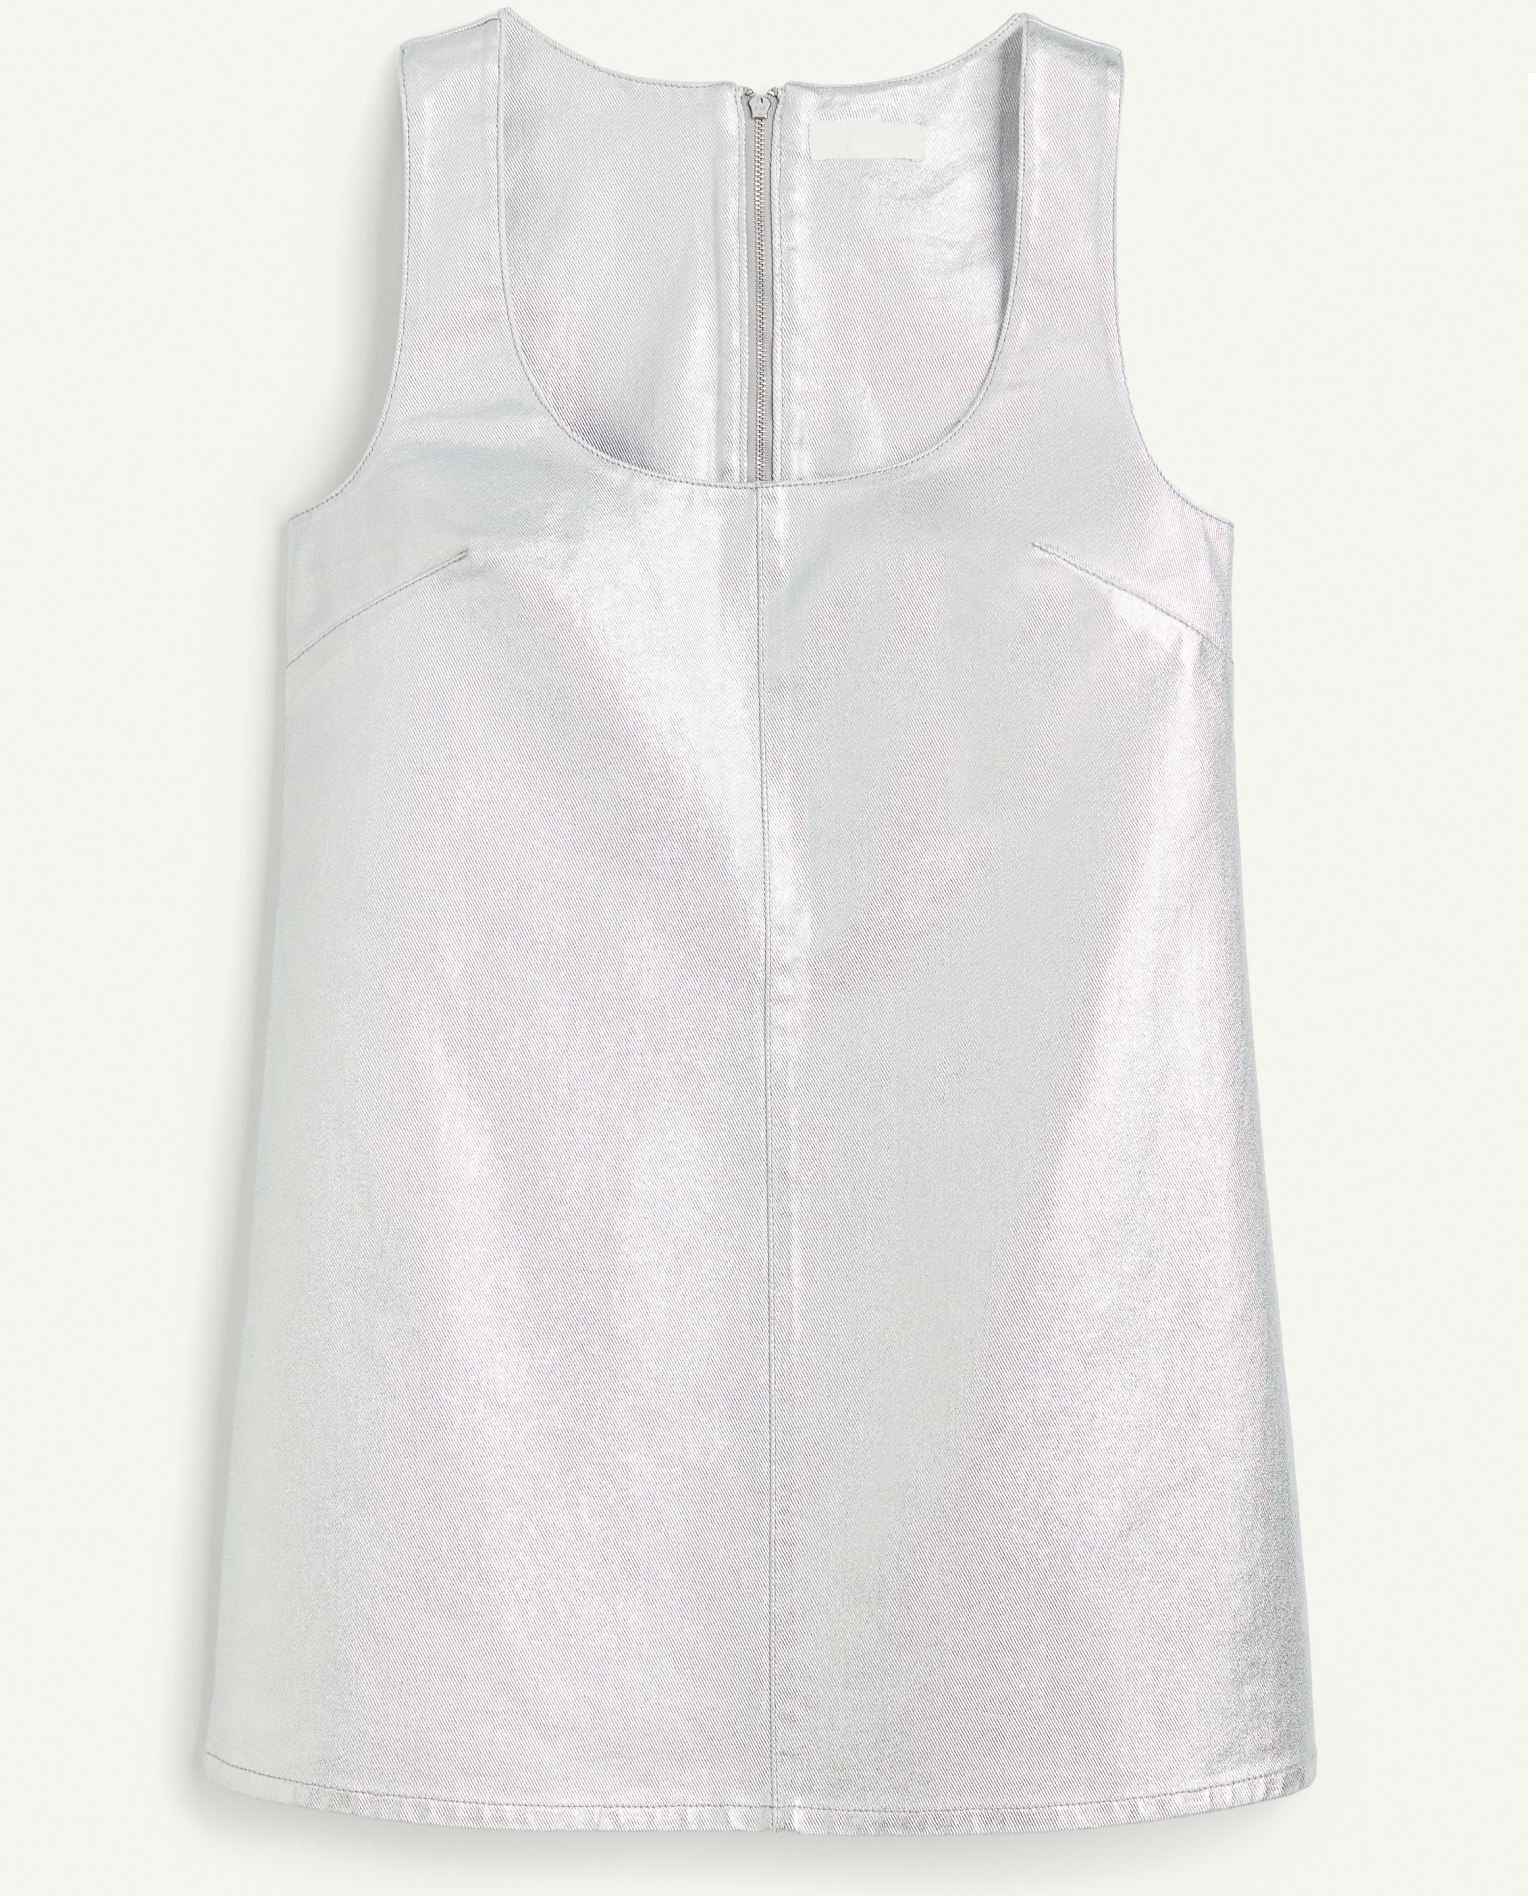 жакет без рукавов из денима xl белый Платье мини H&M Denim With A Metallic Shine, серебристый